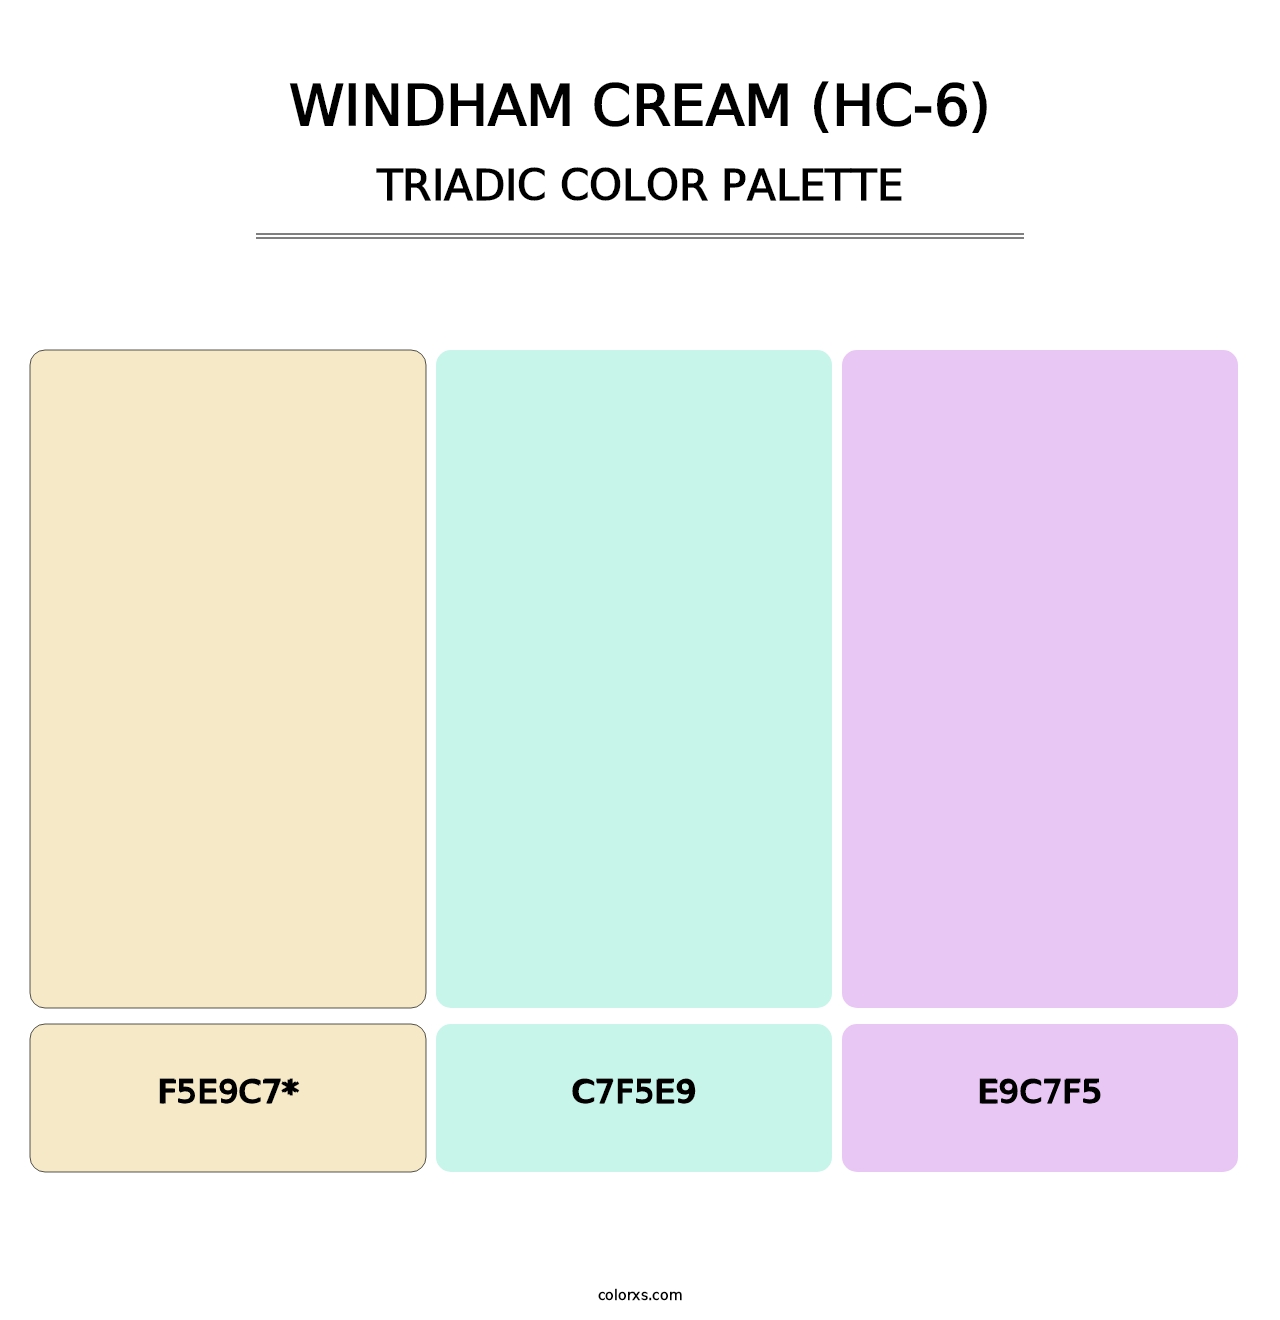 Windham Cream (HC-6) - Triadic Color Palette